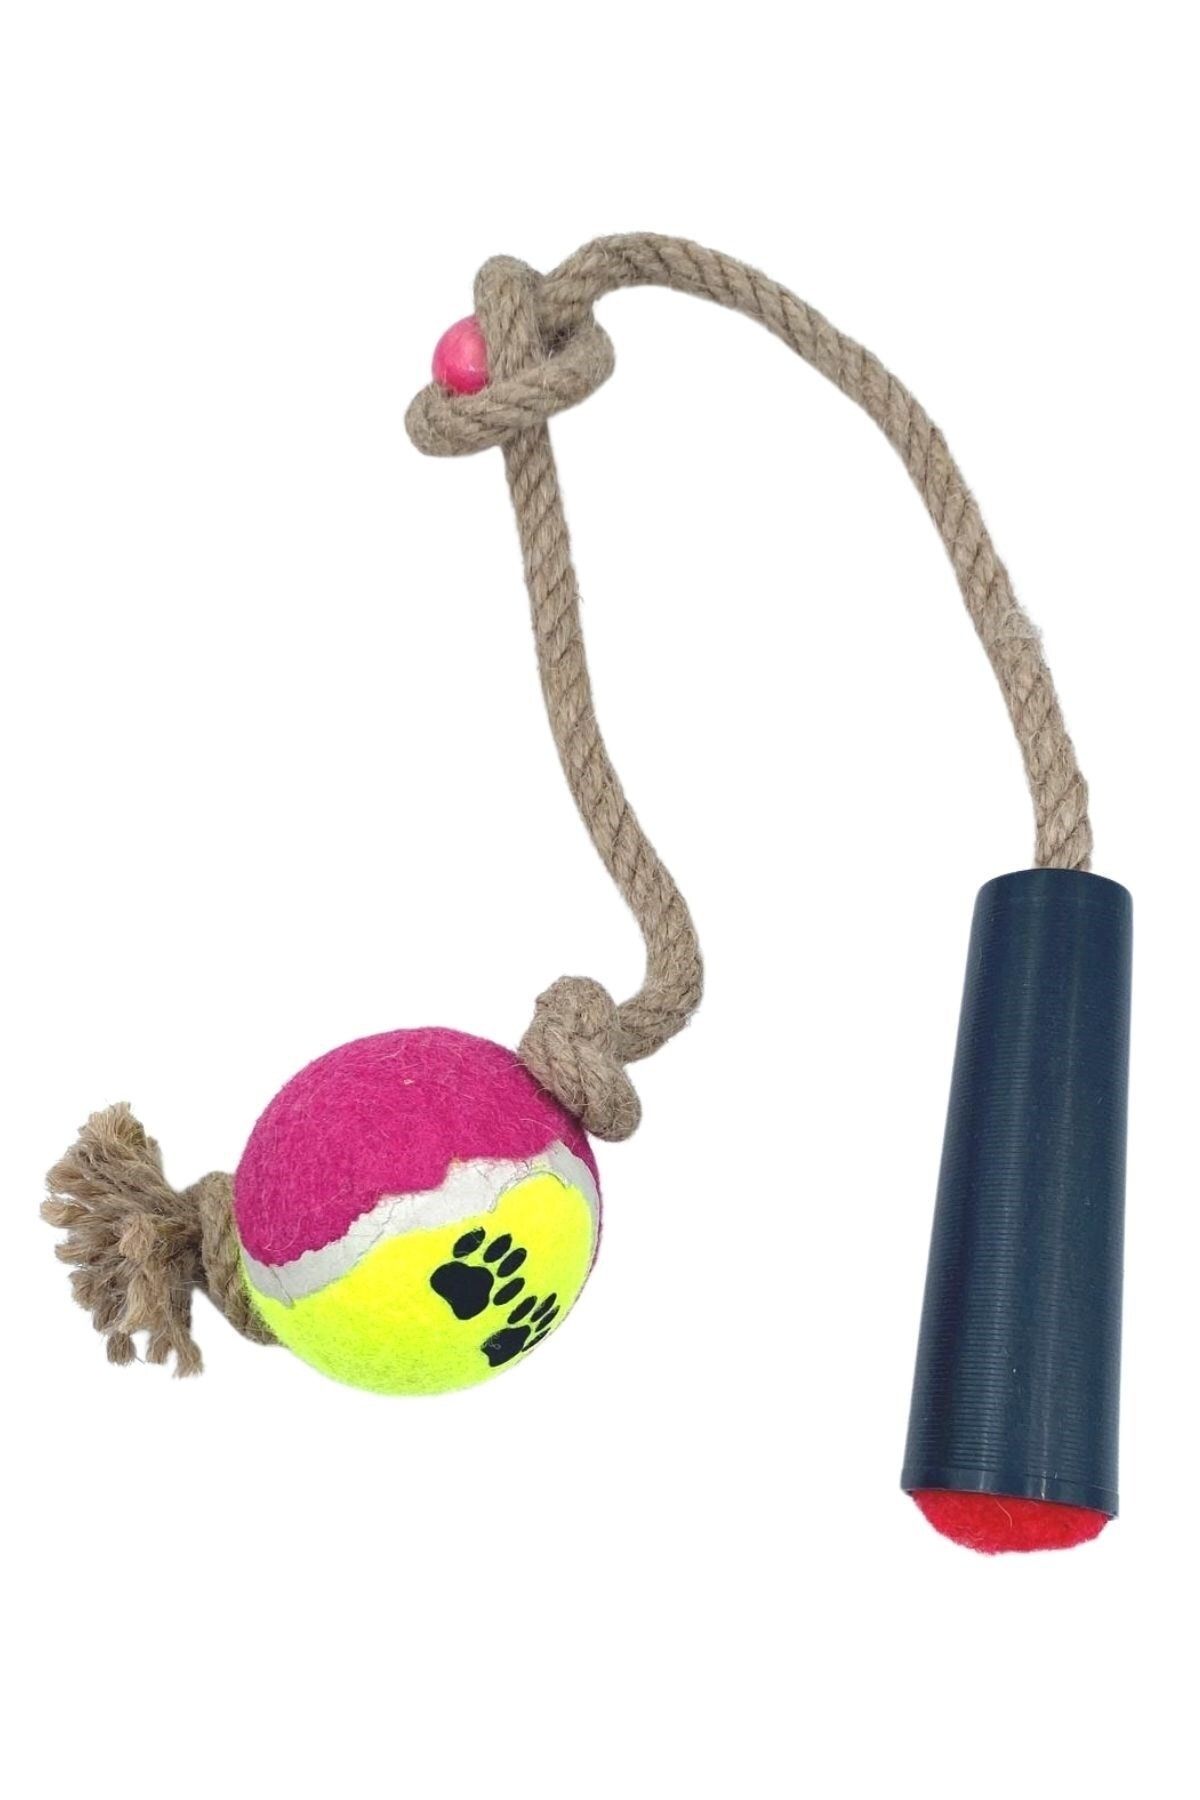 Buffer ® Tenis Toplu Diş Halatı Diş Kaşıma Köpek Oyuncağı Tenis Toplu Halat Çekme 2 Kişilik Oyun